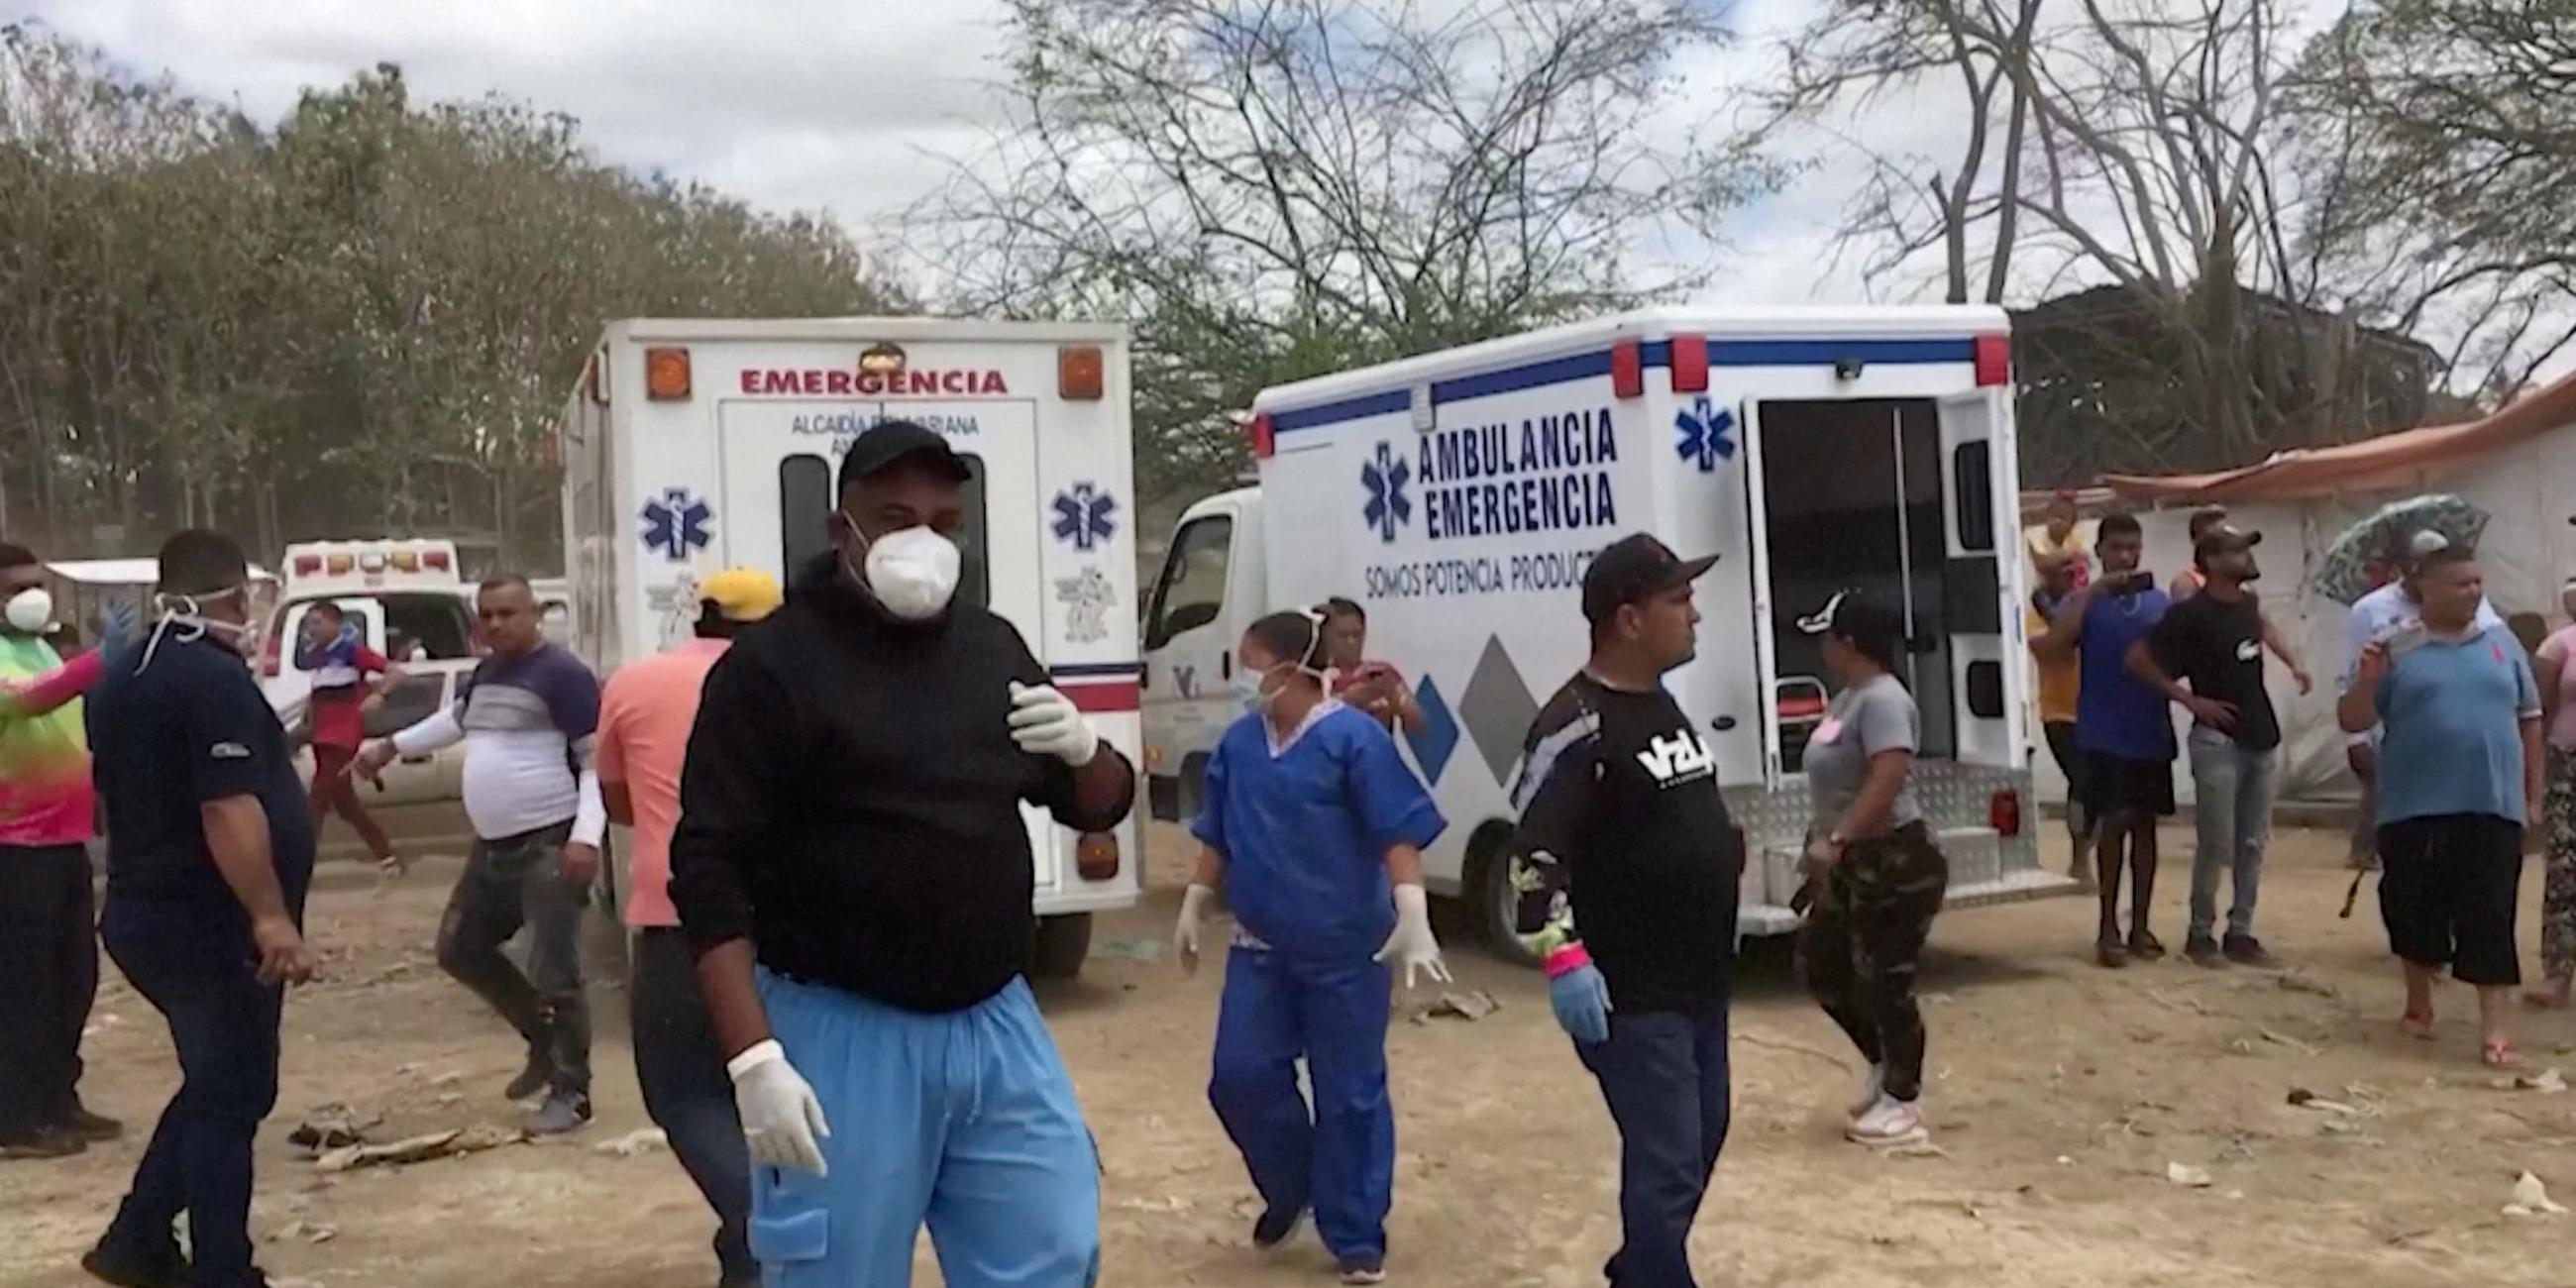 Rettungskräfte versammeln sich vor zwei Krankenwagen nach einem Minenunglück mit mindestens 15 Toten in Venezuela.